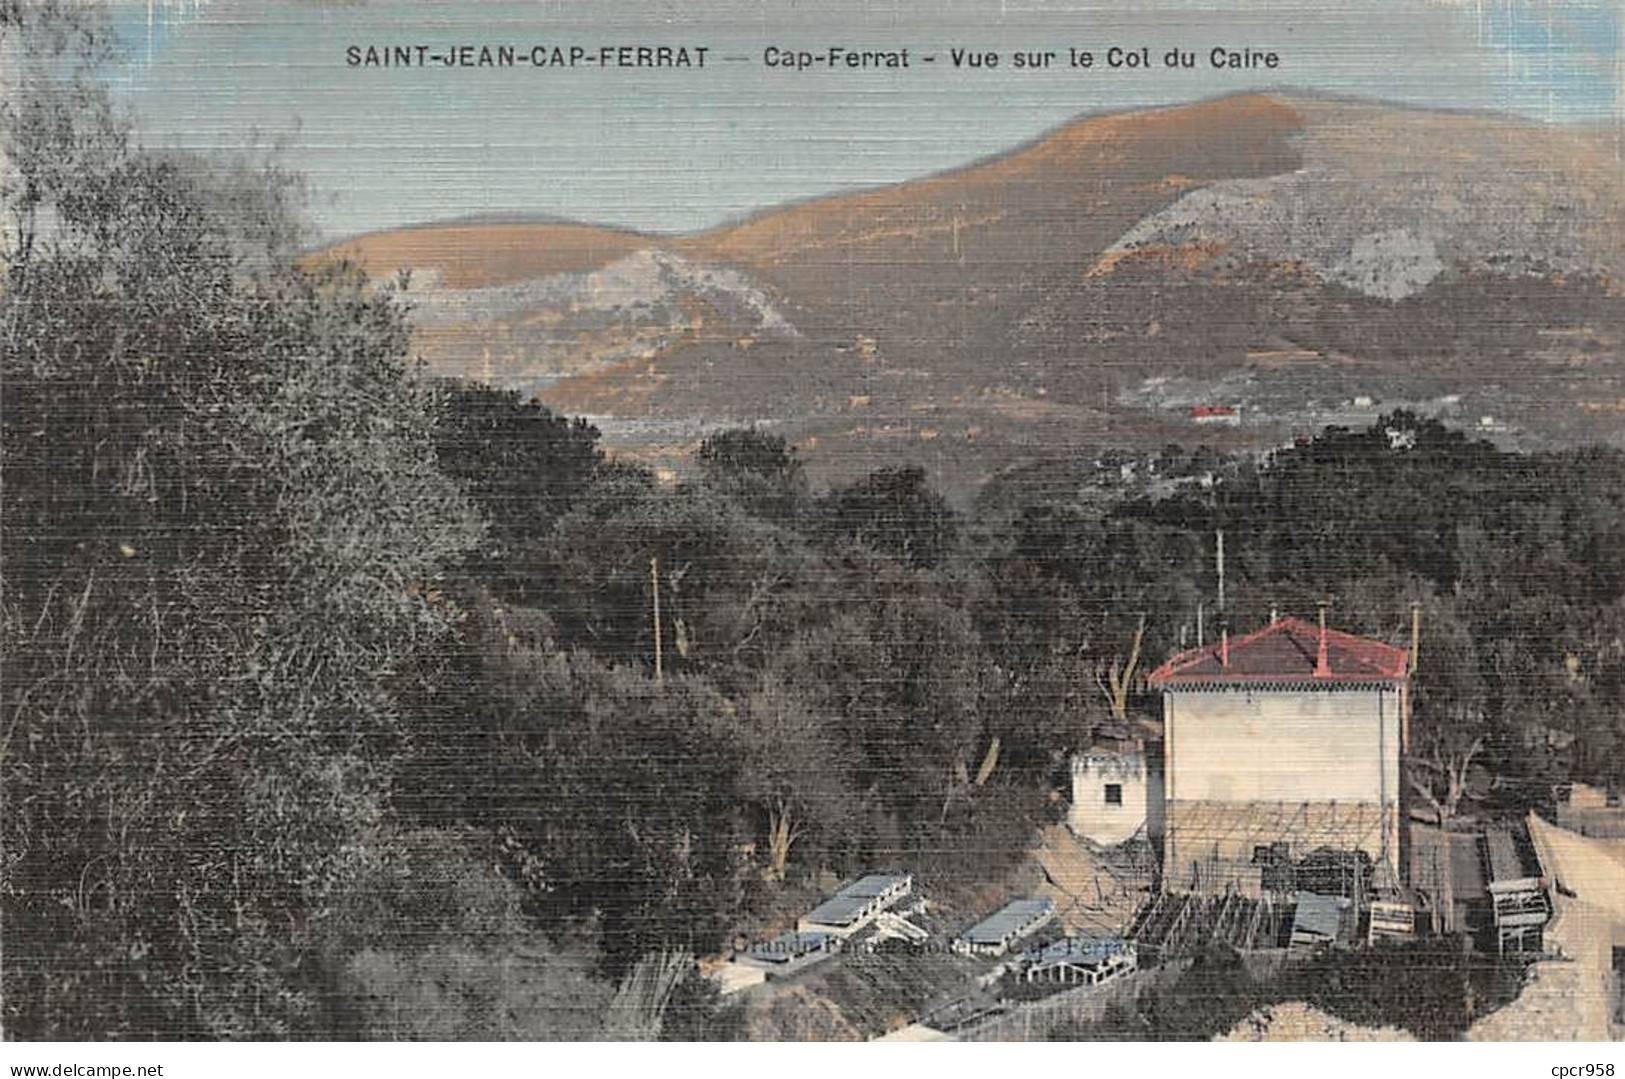 06 - SAINT JEAN CAP FERRAT - SAN41824 - Cap Ferrat - Vue Sur Le Col Du Caire - Saint-Jean-Cap-Ferrat